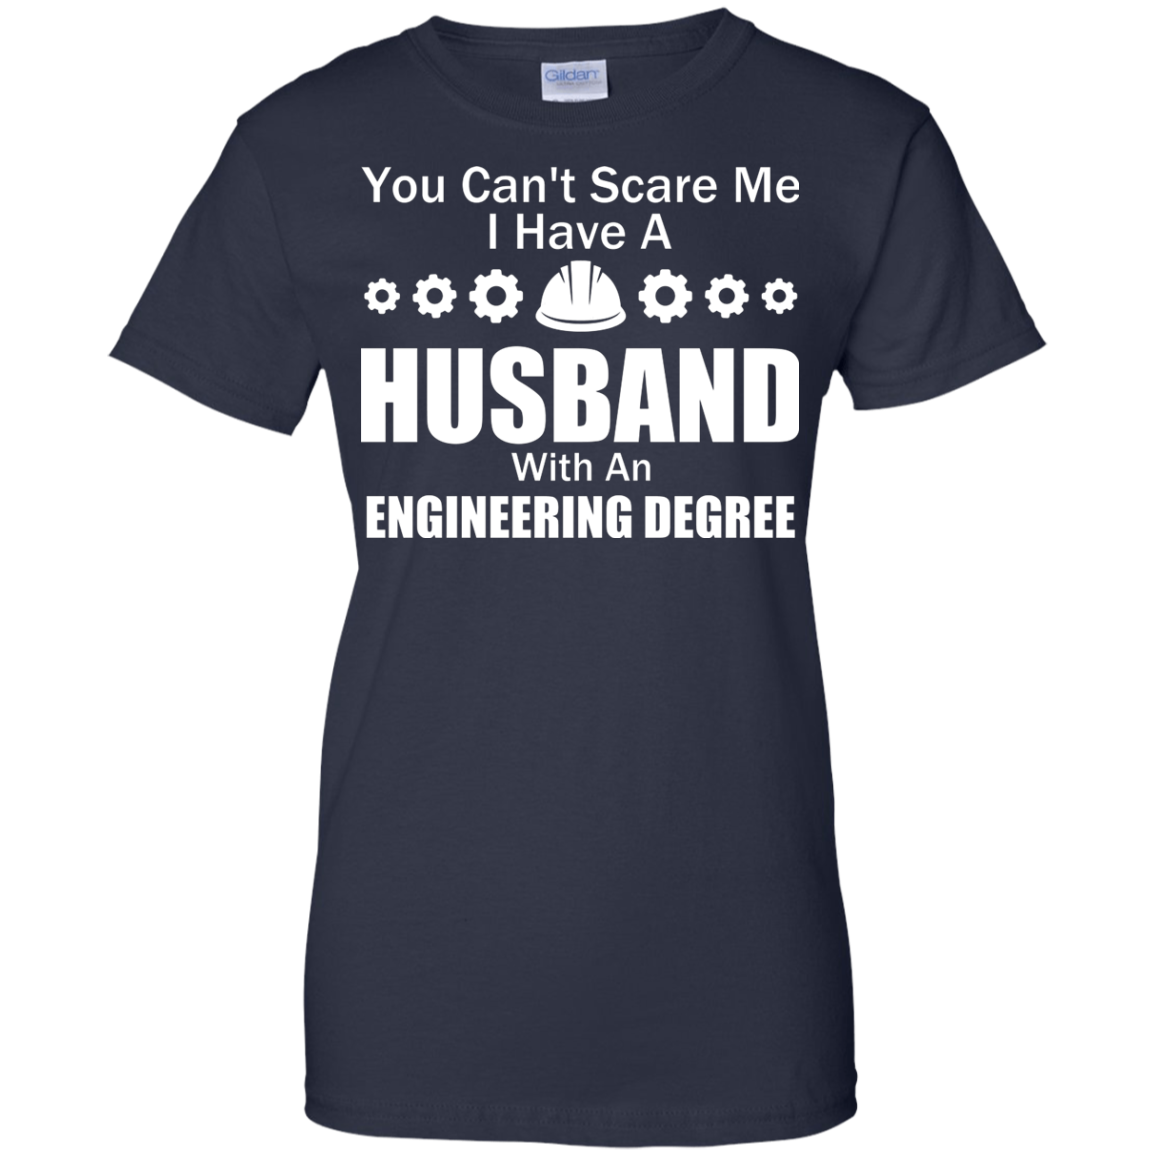 No puedes asustarme: tengo un marido con un título en ingeniería